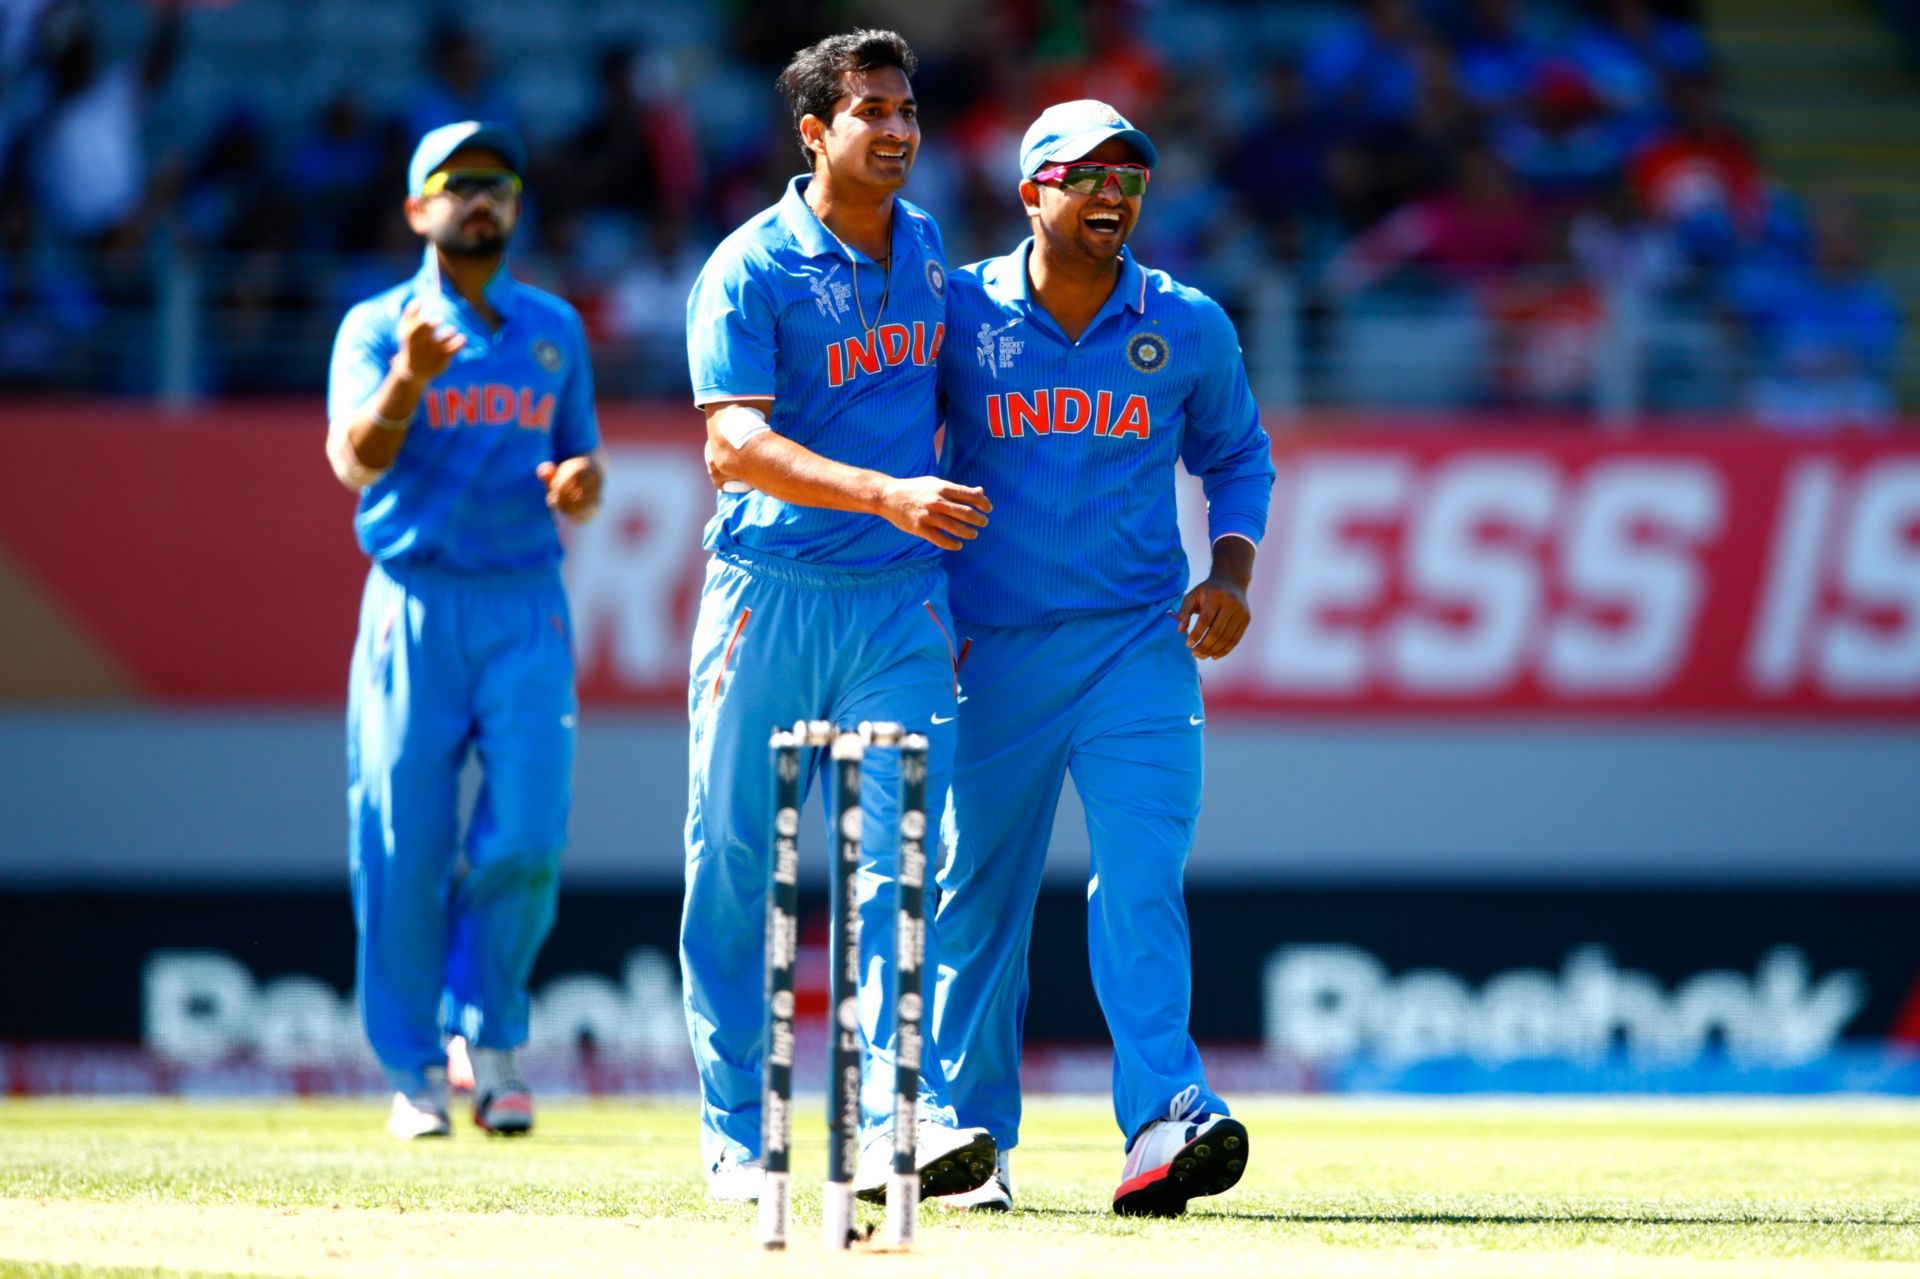 India v Zimbabwe - 2015 ICC Cricket World Cup